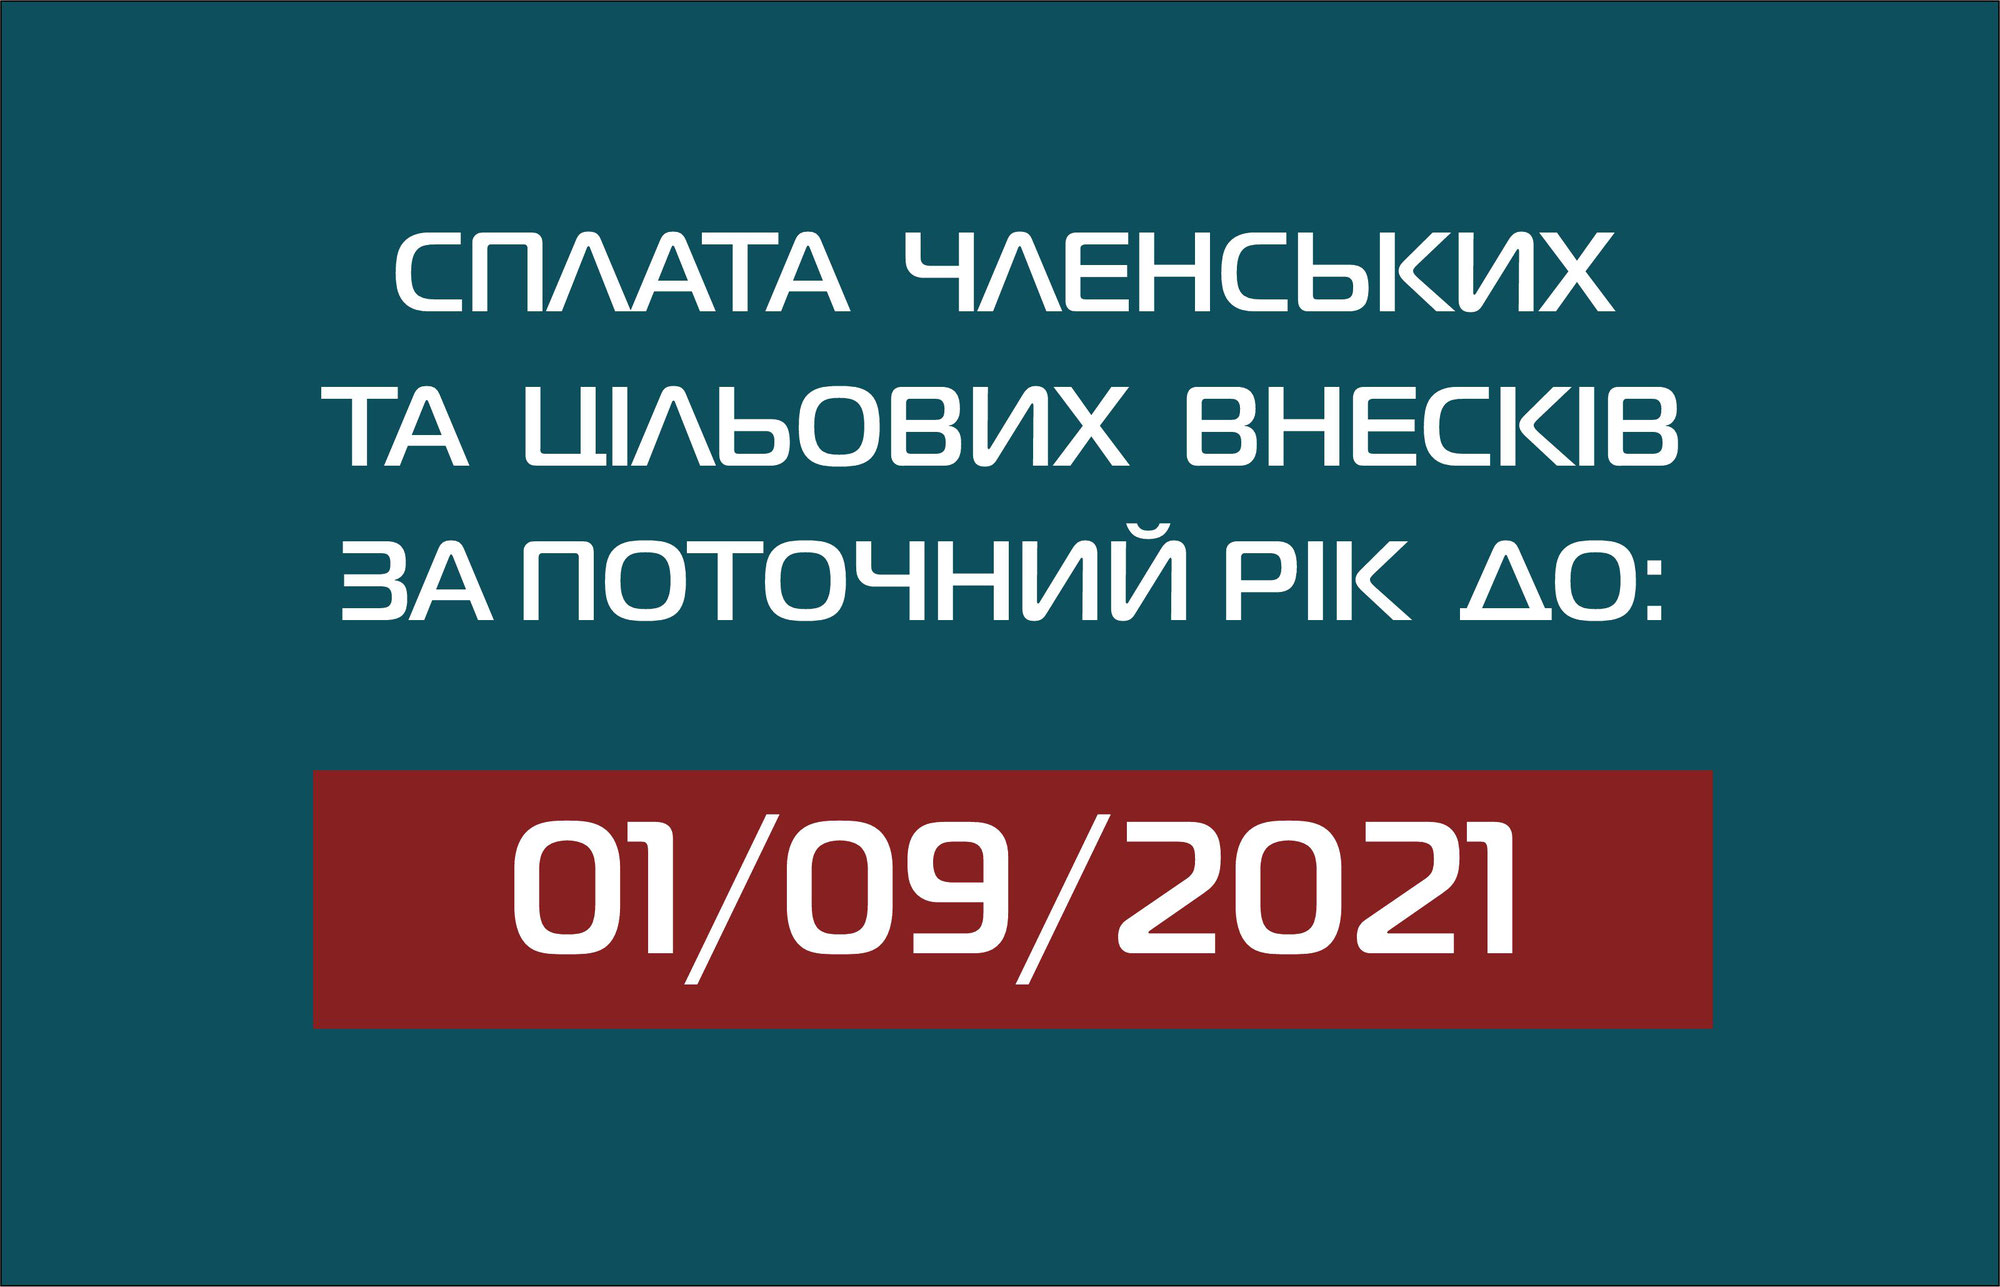 Сплата  членських та цiльових внескiв за поточний рiк  до 01/09/2021